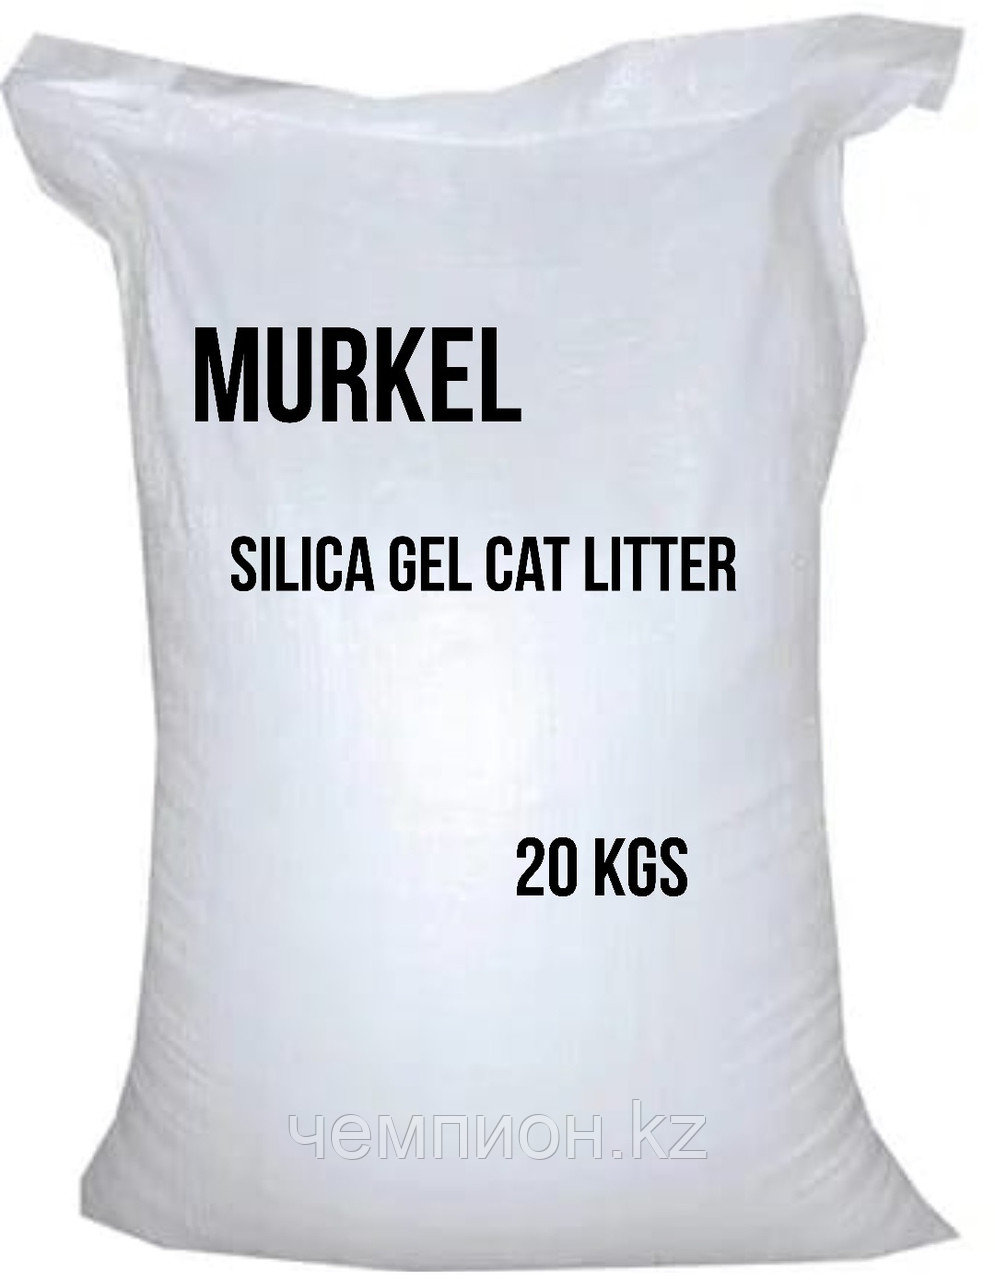 Murkel, Муркель силикагелевый наполнитель для кошек с ароматом яблока, уп.44л (20кг)